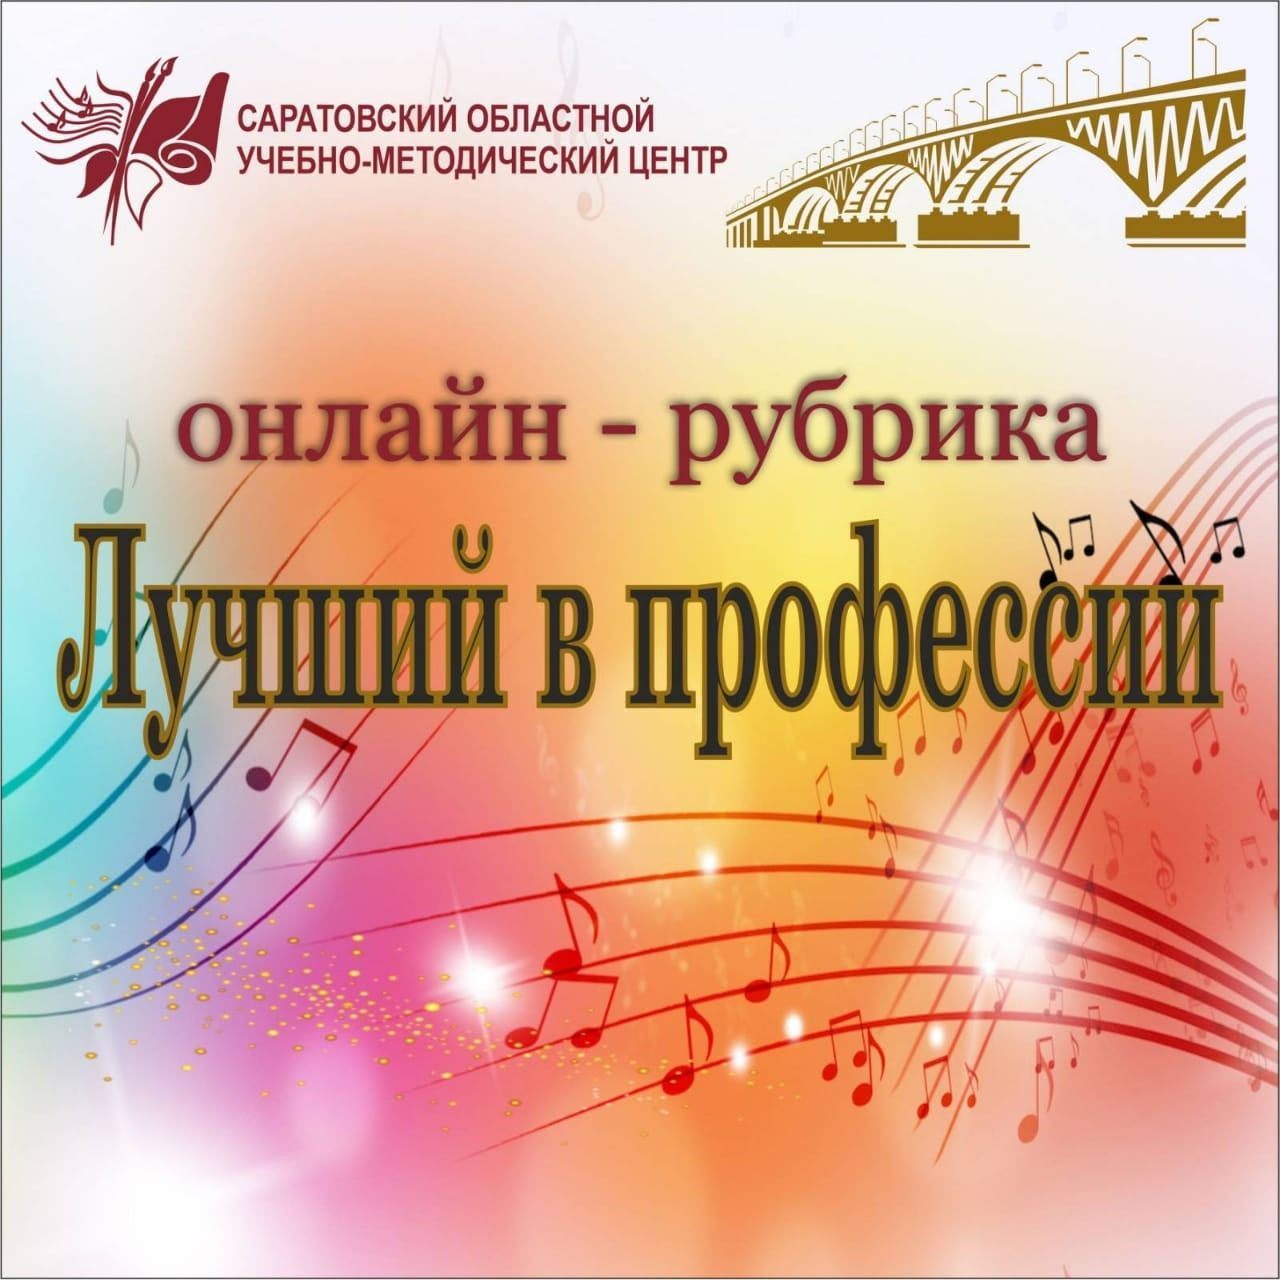 Поздравляем Александра Михайловича Шора с большим авторским концертом